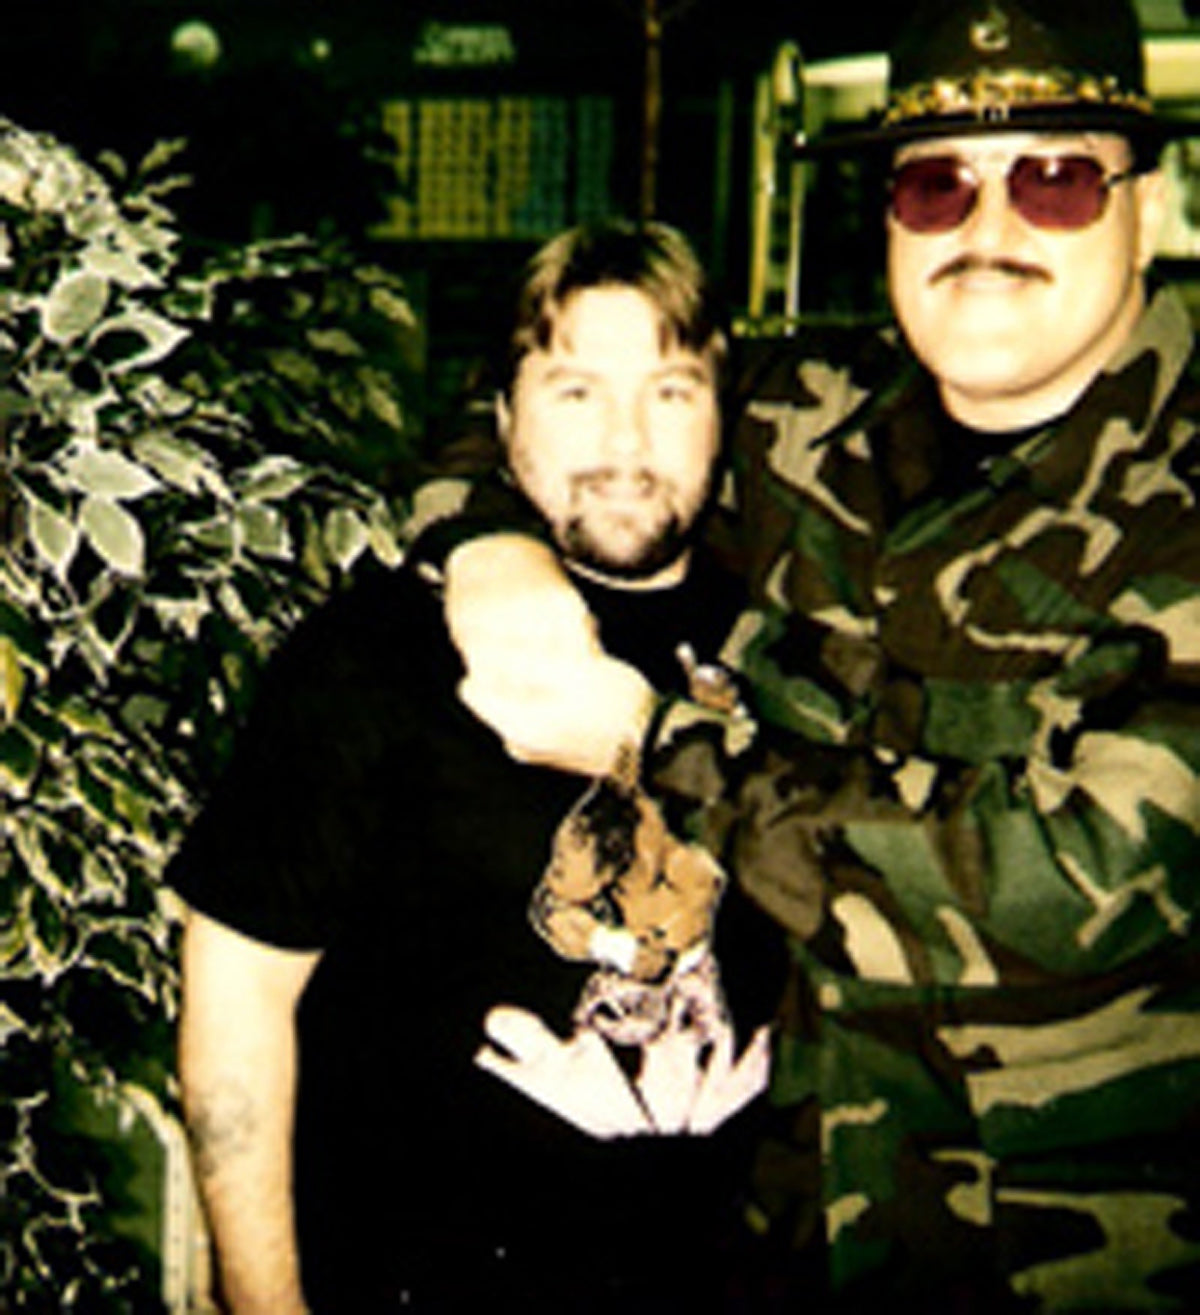 BD84  Sgt Slaughter Bob Backlund  Autographed Vintage Wrestling Magazine w/COA